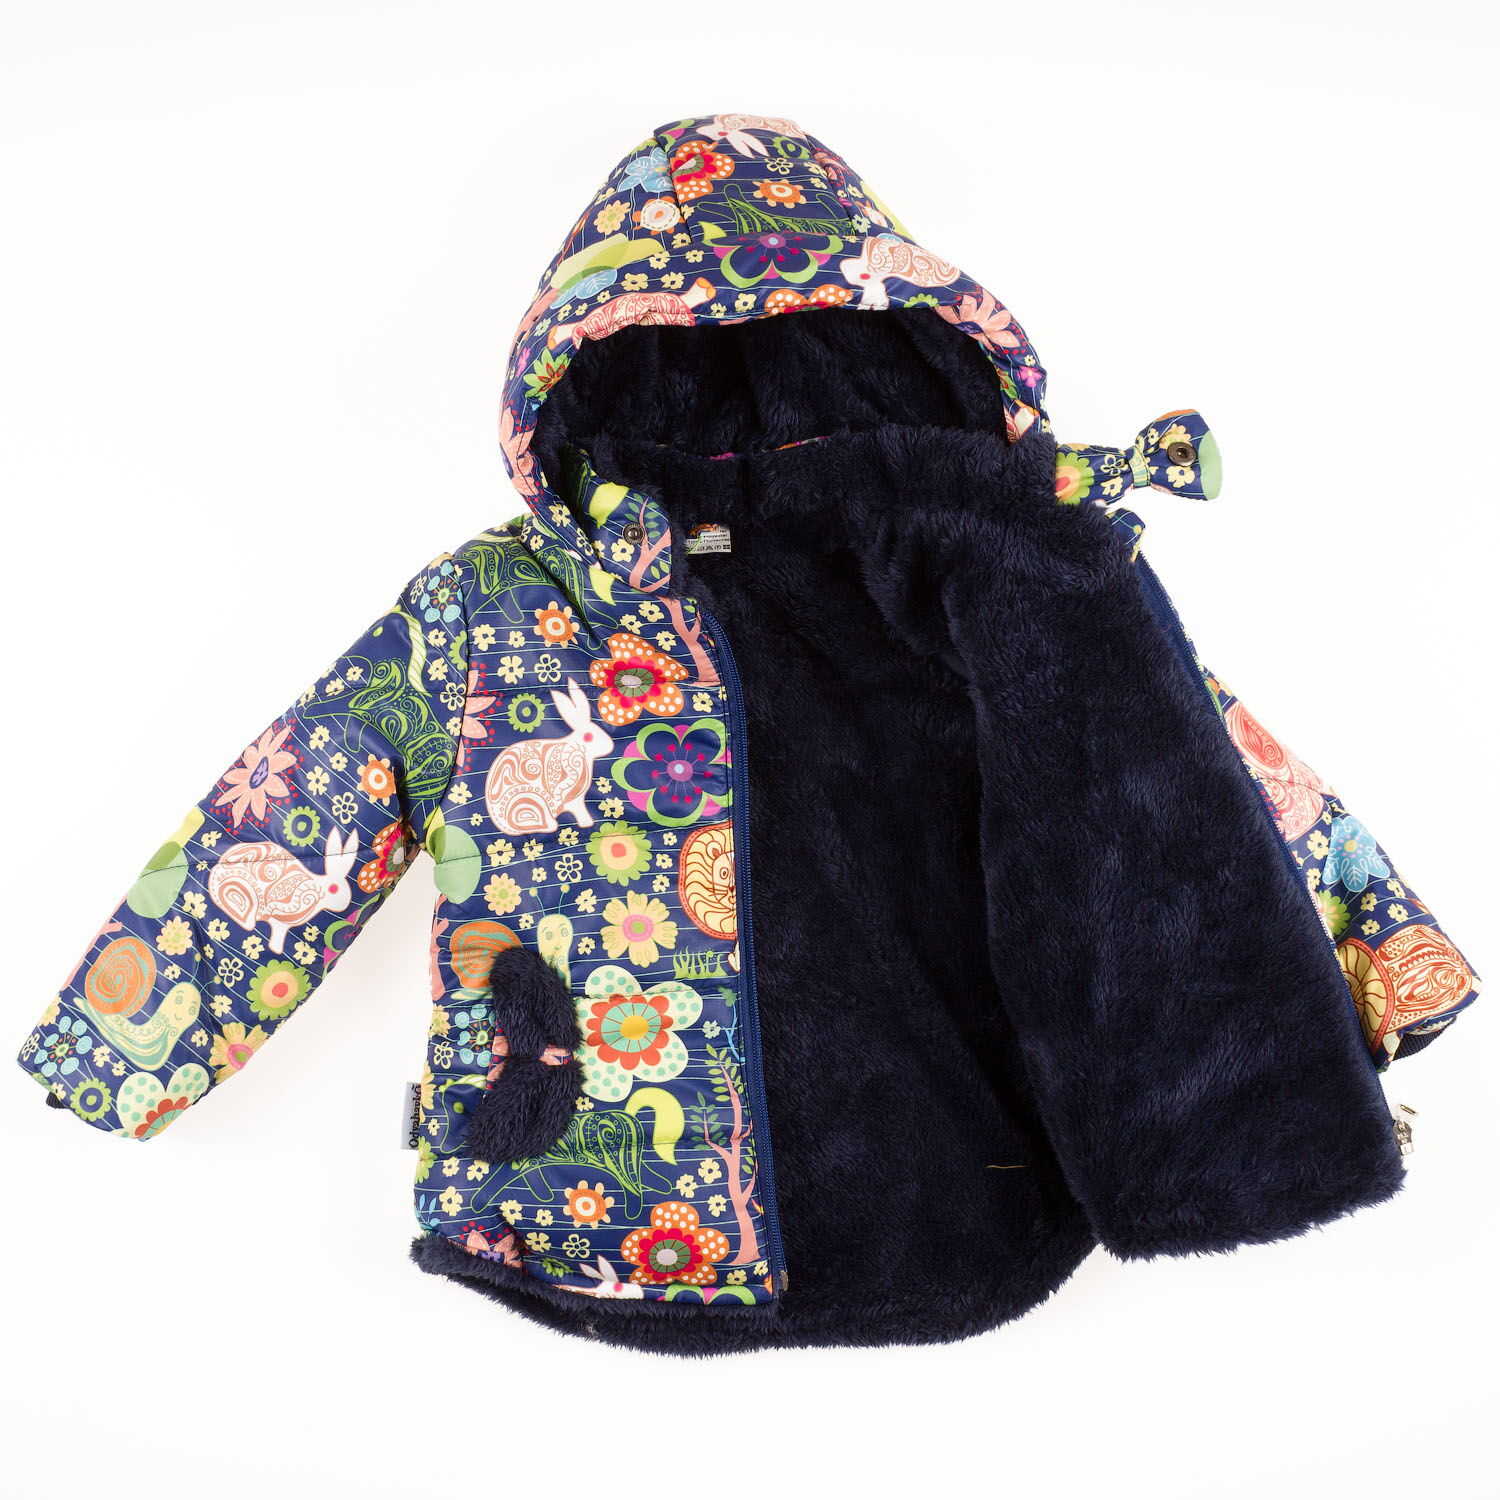 Комбинезон раздельный для девочки (куртка+штаны) ОДЯГАЙКО Цветы темно-синий 22110/01230 - купить